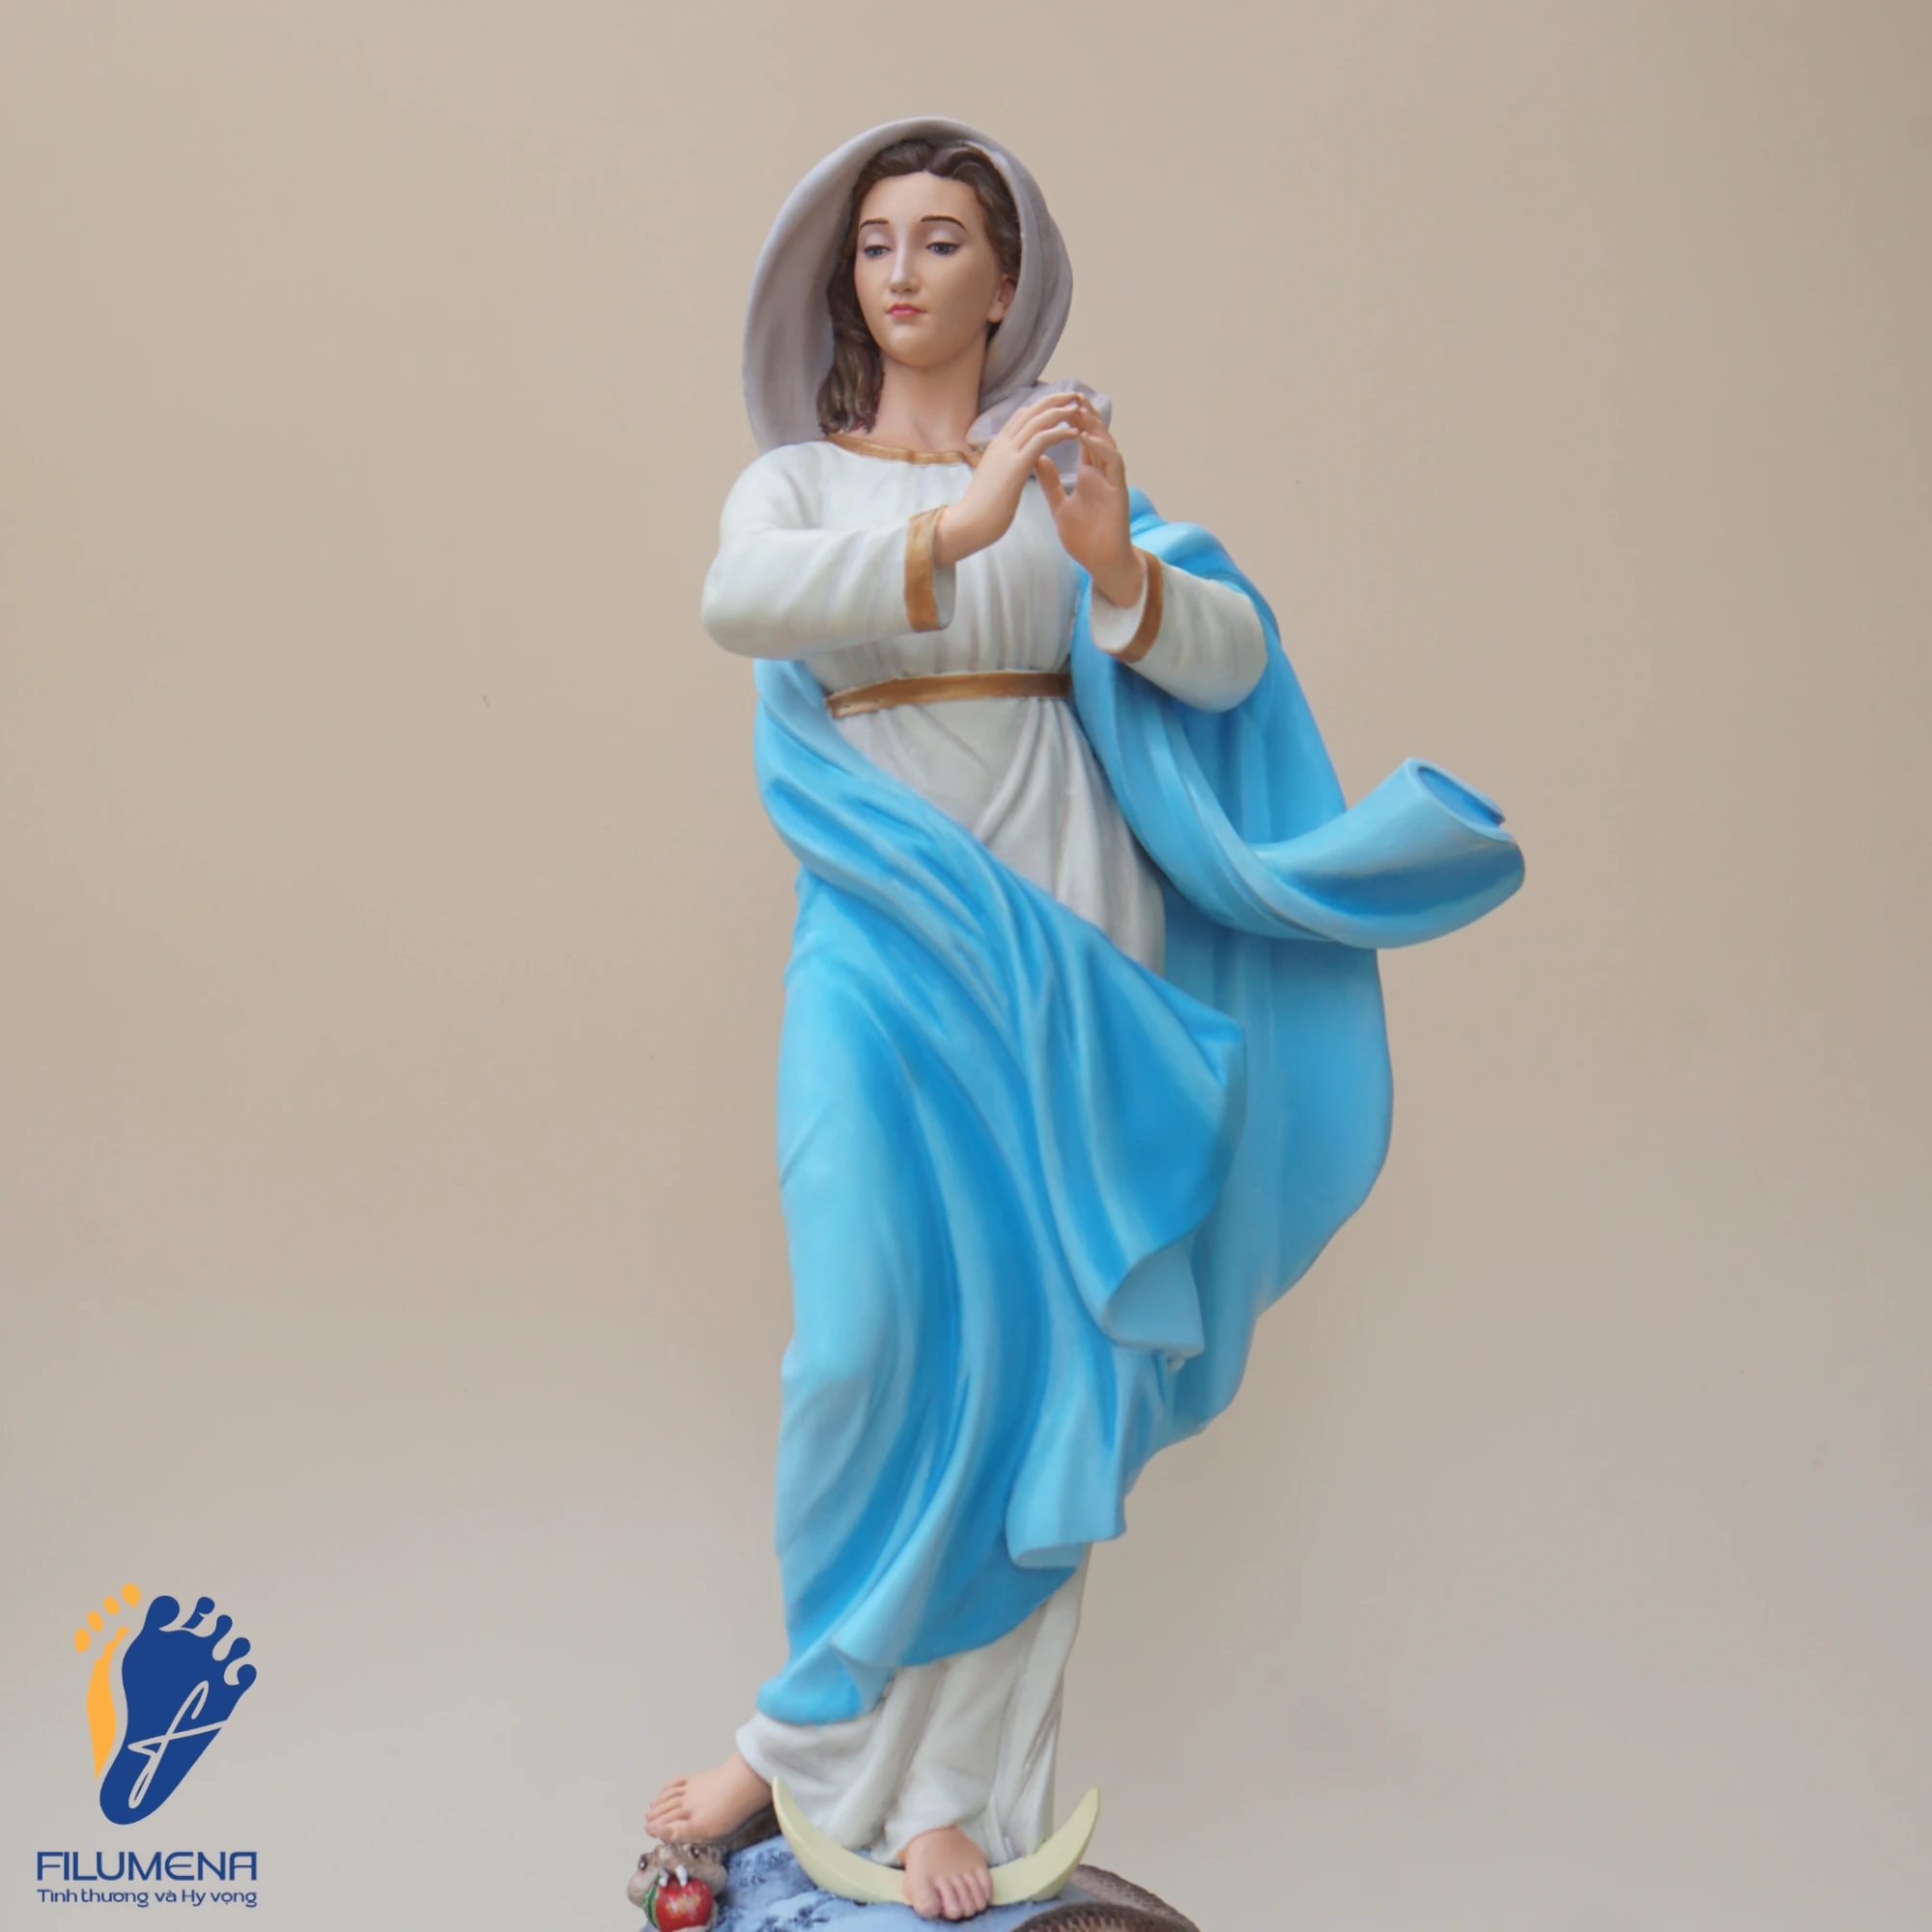 Tượng Đức Mẹ Vô Nhiễm Nguyên Tội, áo Mẹ màu xanh da trời, chụp từ góc phải (sáng tác bởi Filumena)